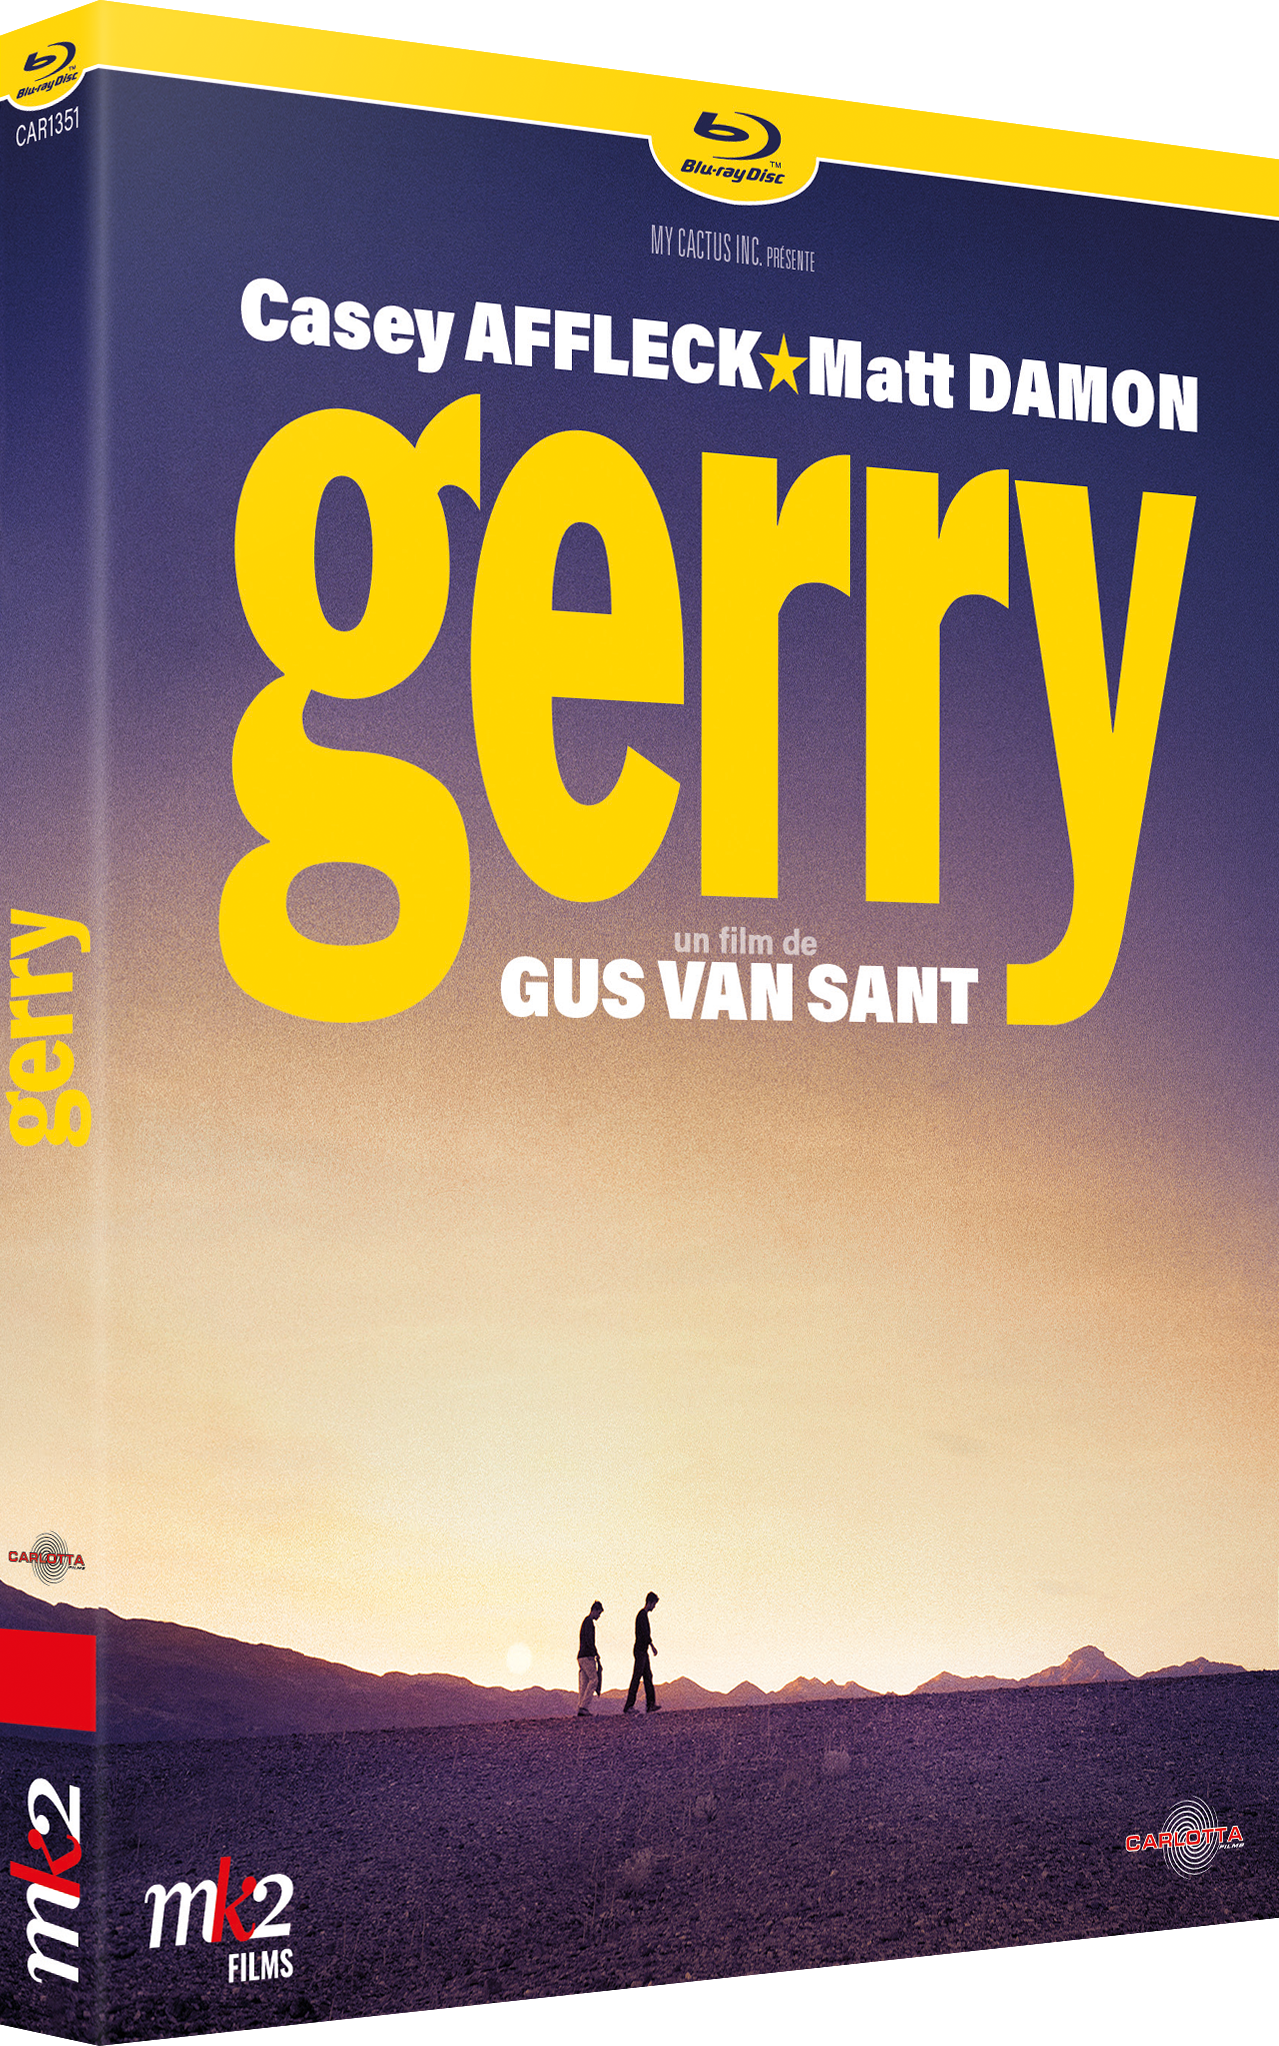 Gerry by Gus Van Sant